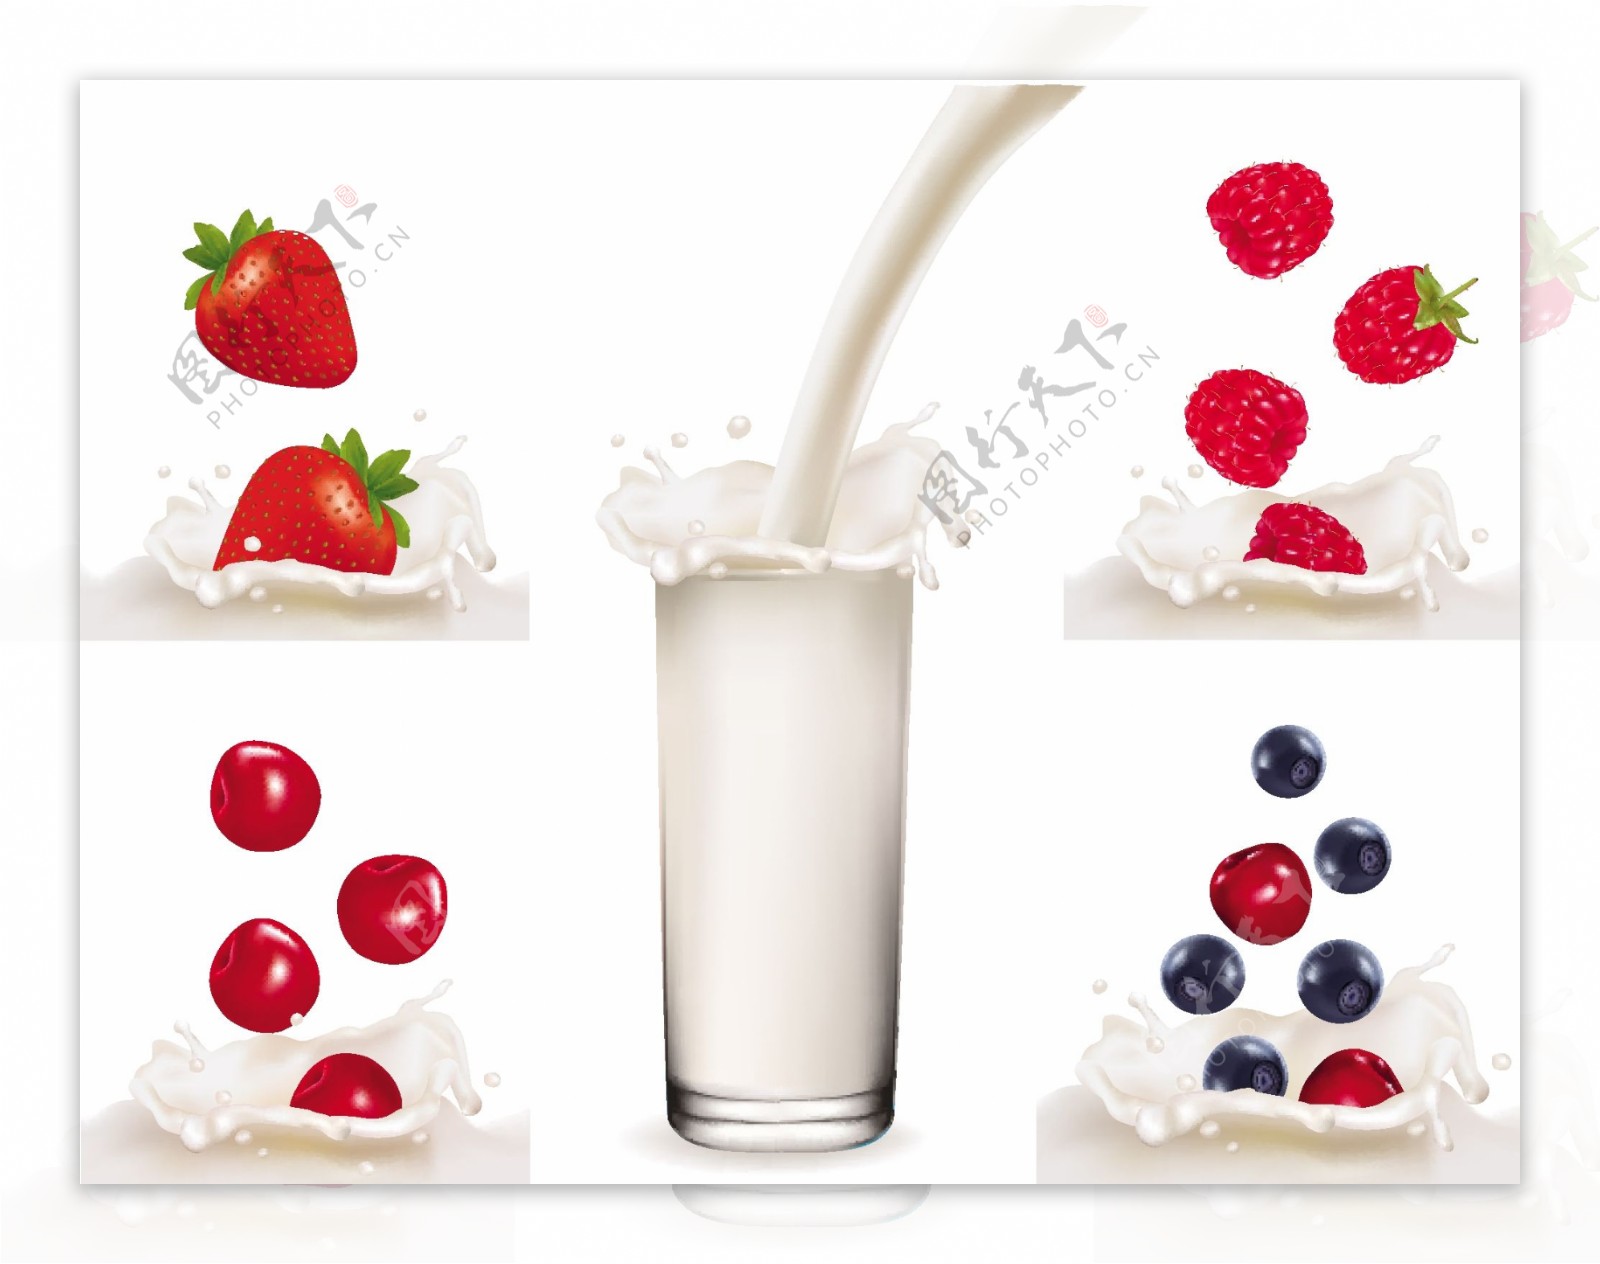 水果鲜奶草莓蓝莓樱桃牛奶图片